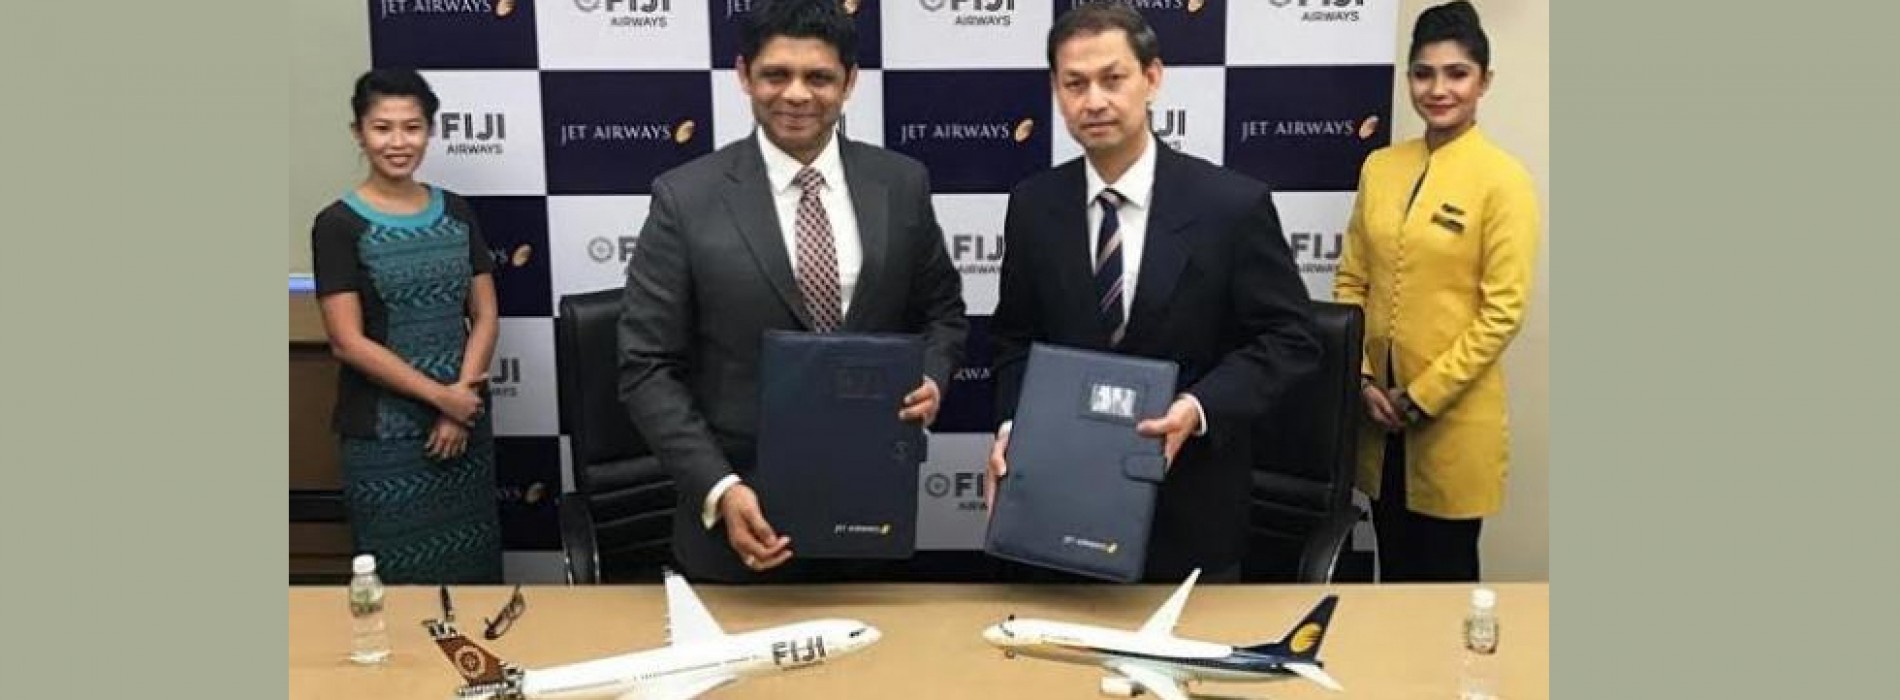 Jet Airways And Fiji Airways announce Codeshare Agreement